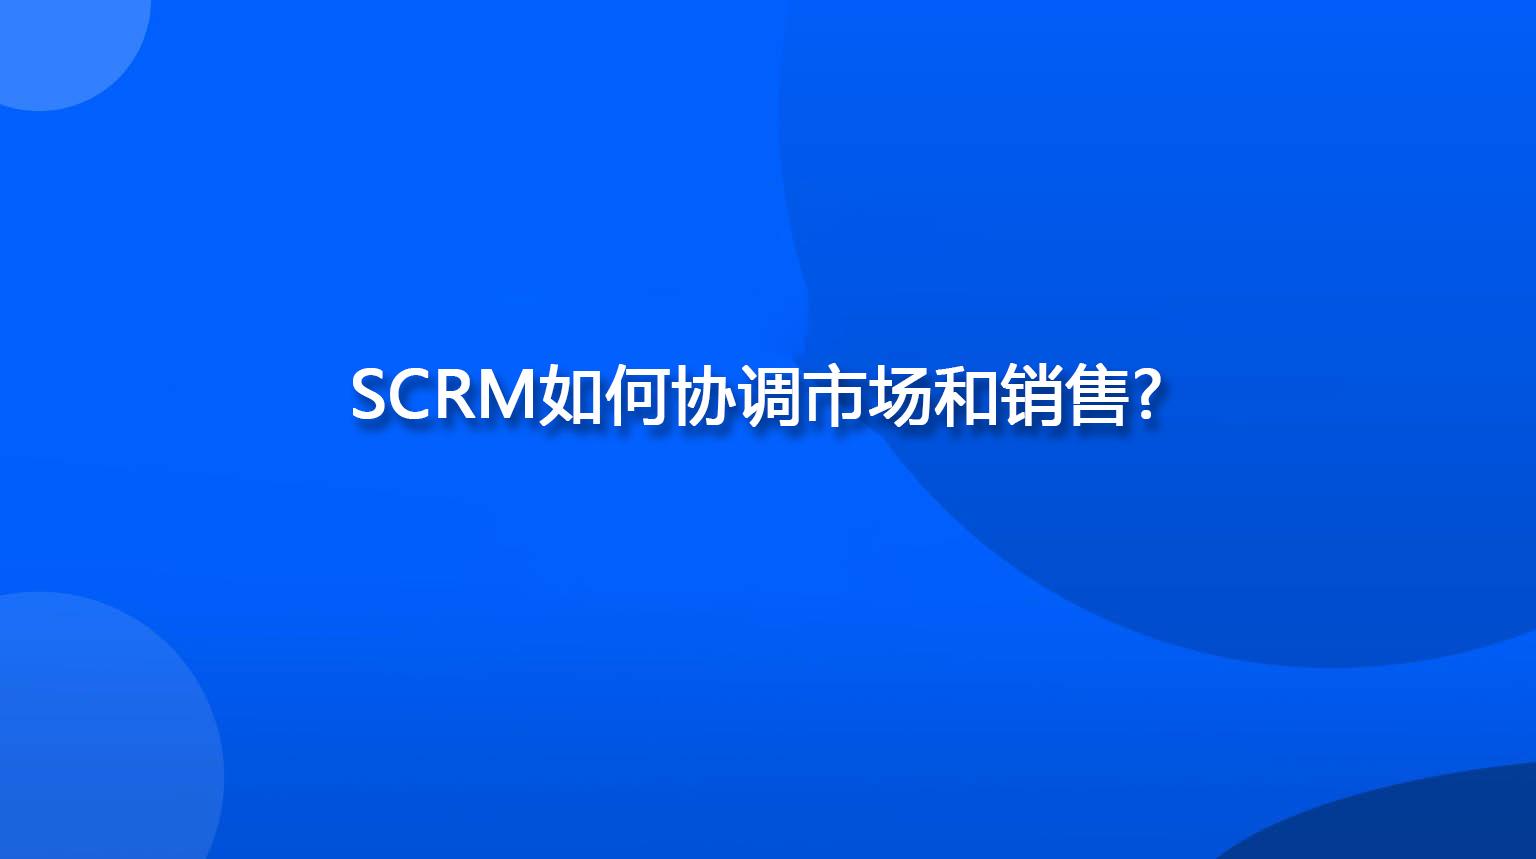 SCRM如何协调市场和销售？